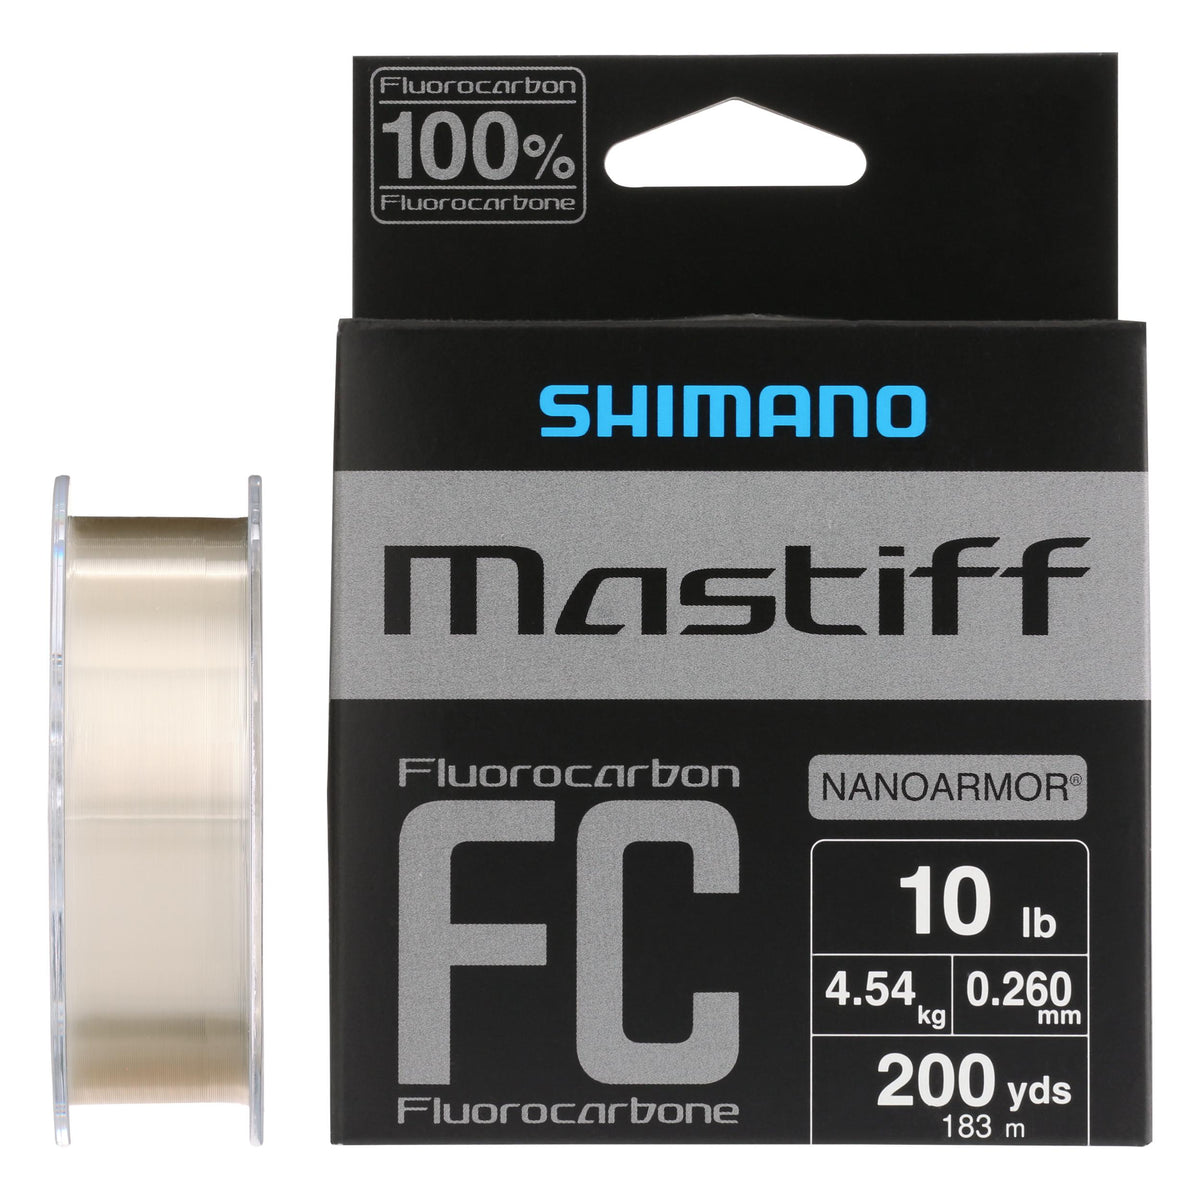 Shimano Mastiff FC Front